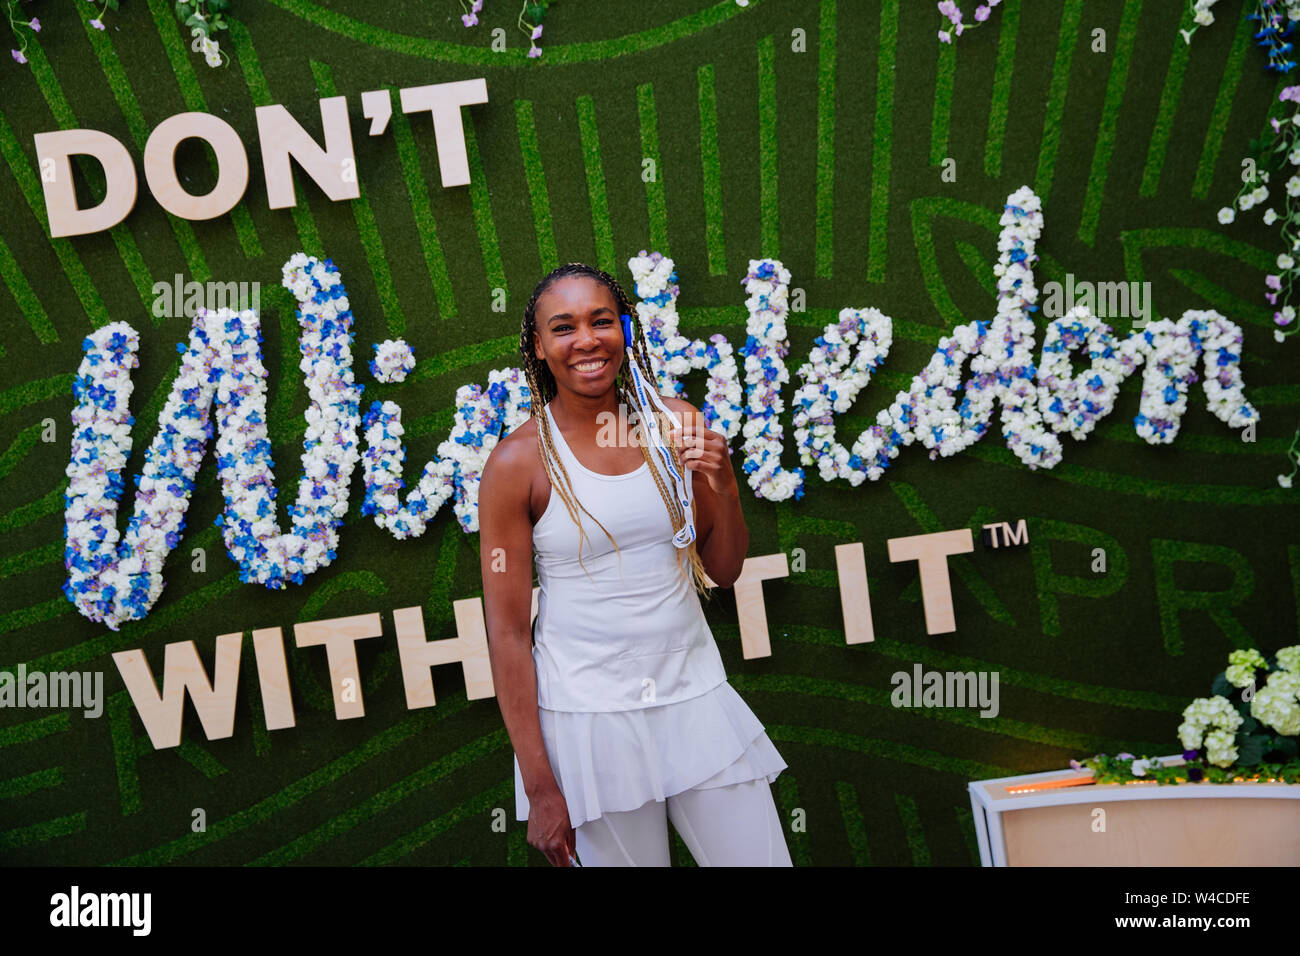 Venus Williams en el Campeonato de Wimbledon 2019. Celebrado en el All England Lawn Tennis Club, el Torneo de Tenis de Wimbledon. Foto de stock